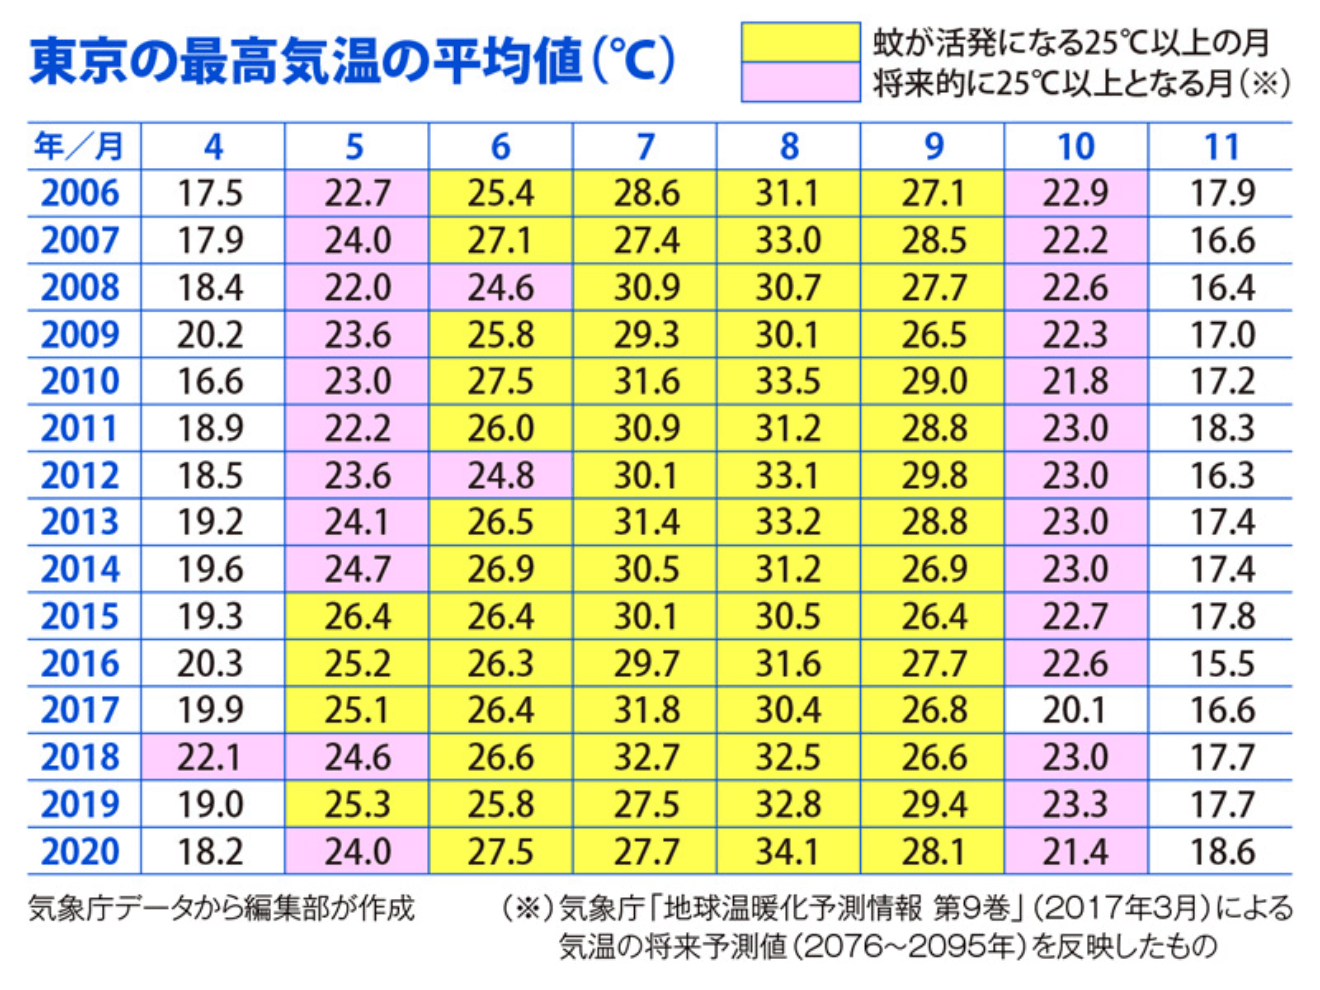 東京の最高気温の平均値(℃)